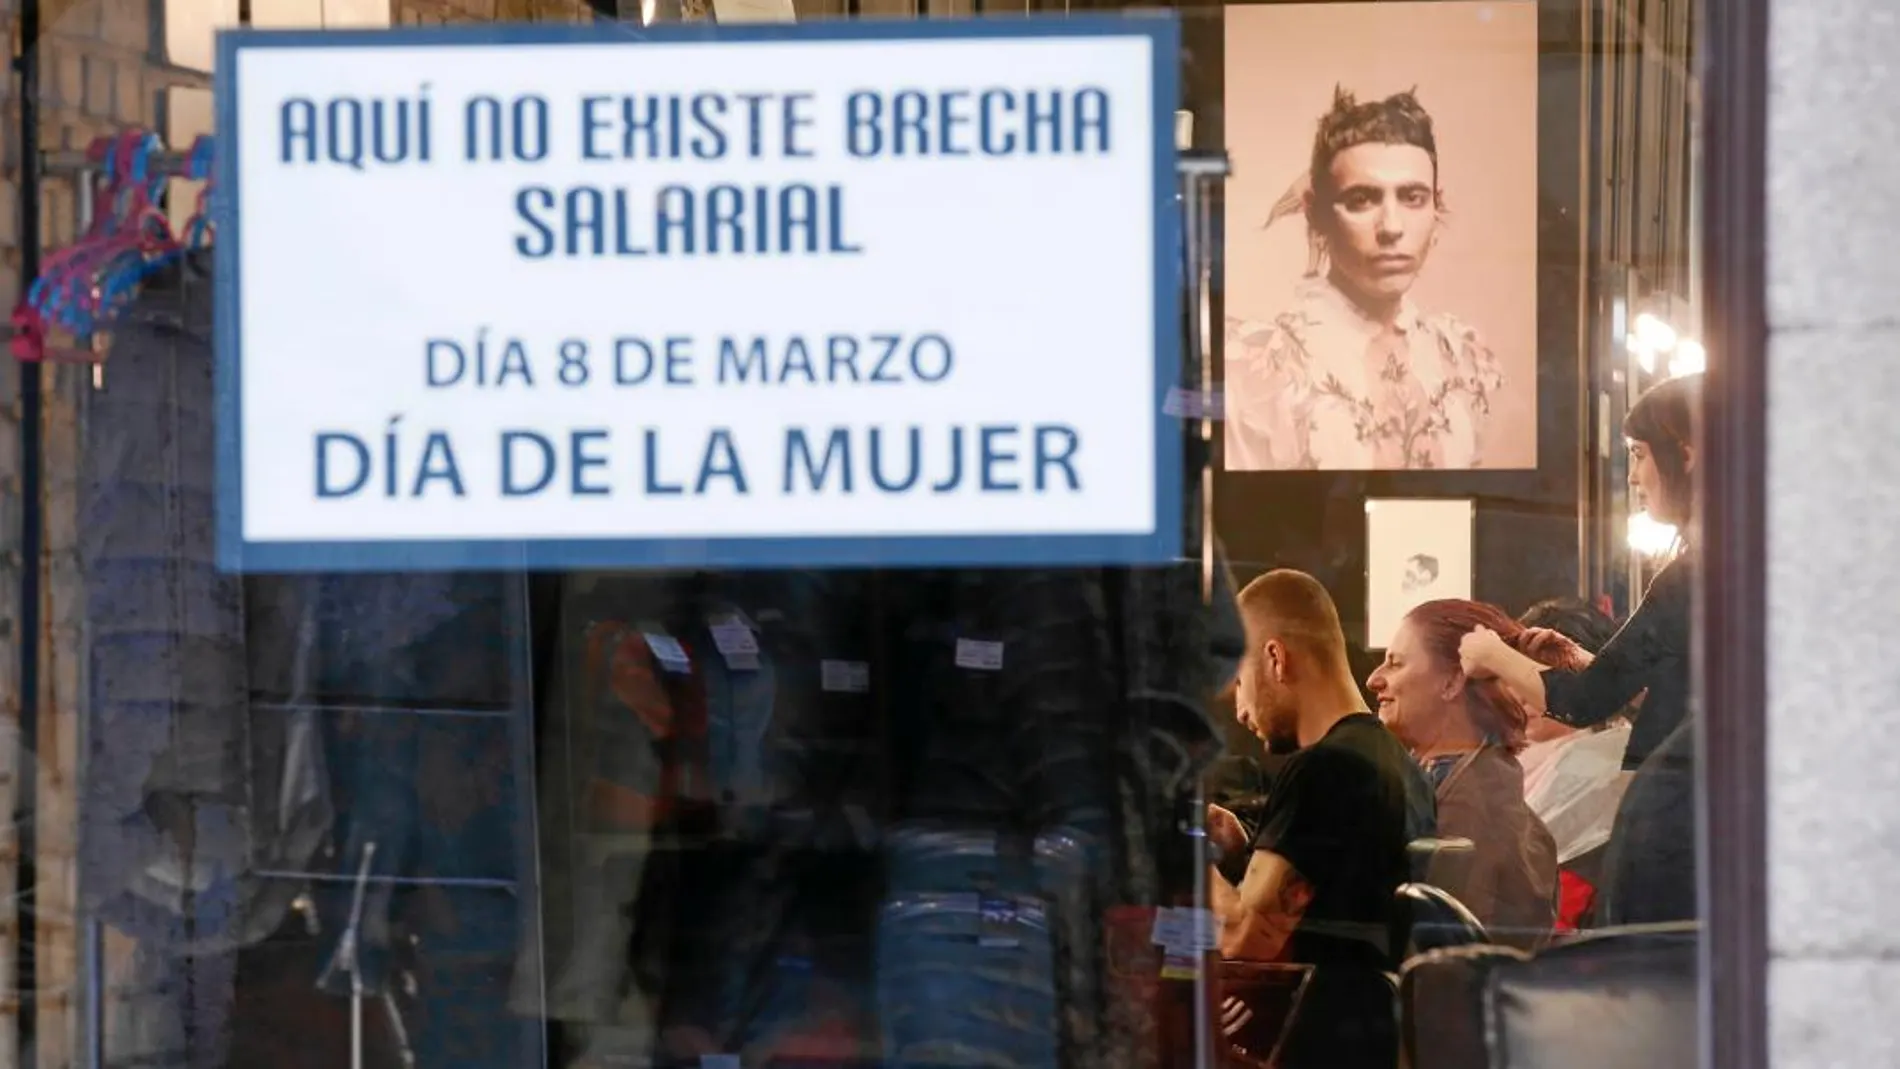 Imagen del escaparate de una peluquería en Madrid